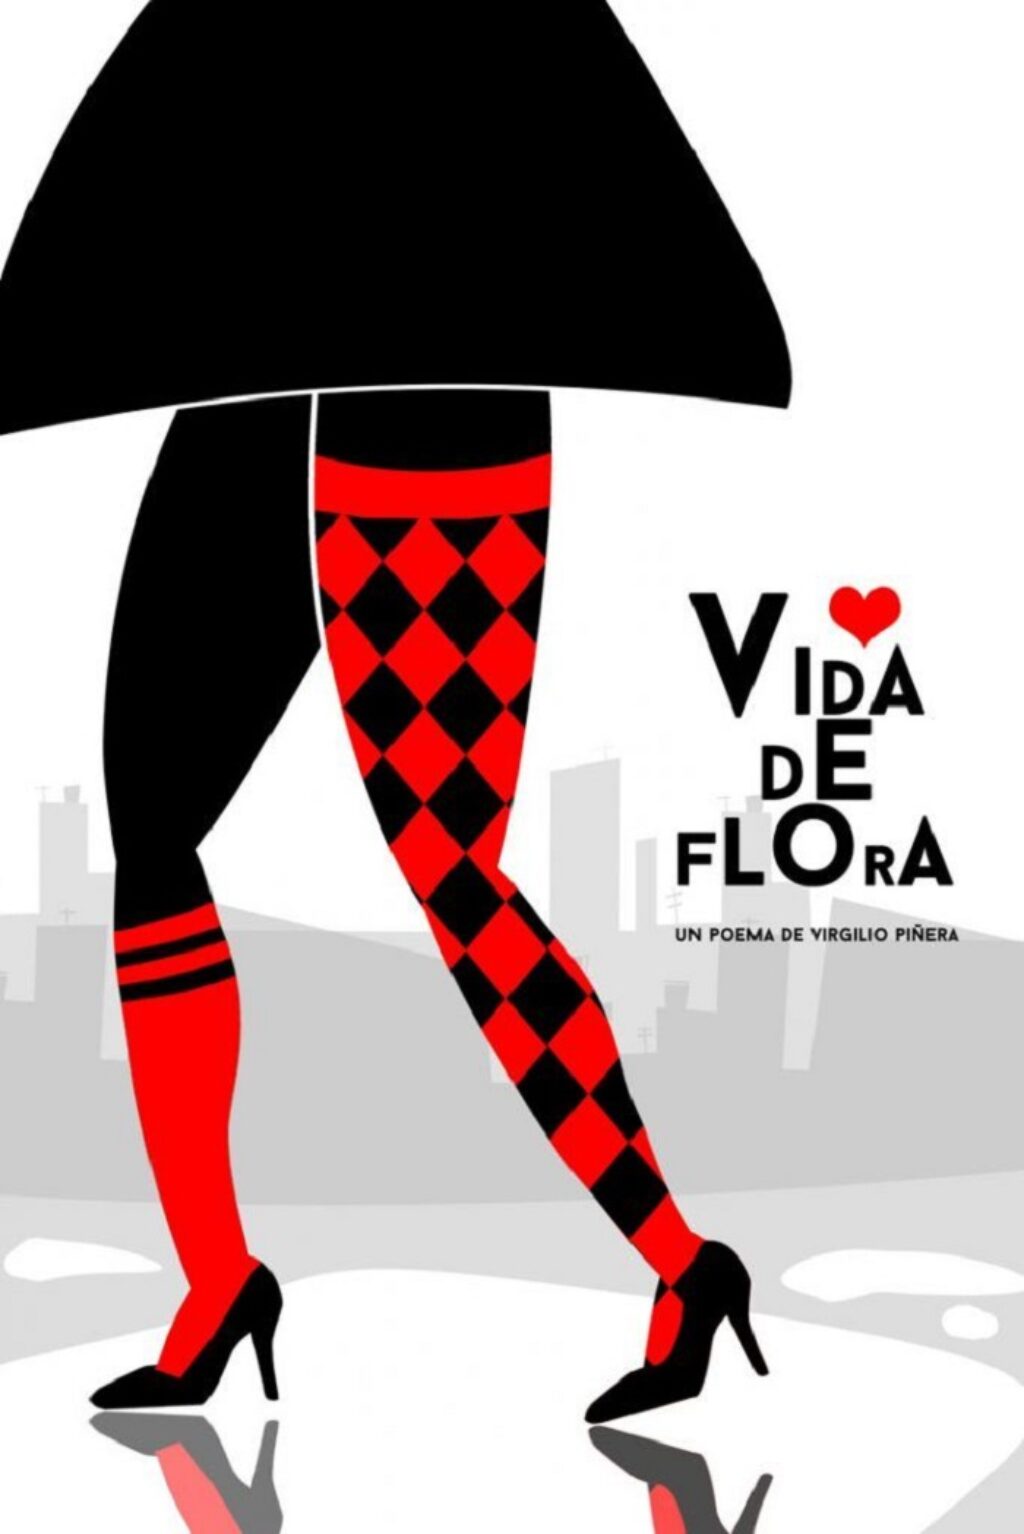 Cartel para poema Vida de Flora, de Virgilio Piñera donde se ven unas piernas femeninas con medias rojas y negras y zapatos de tacón